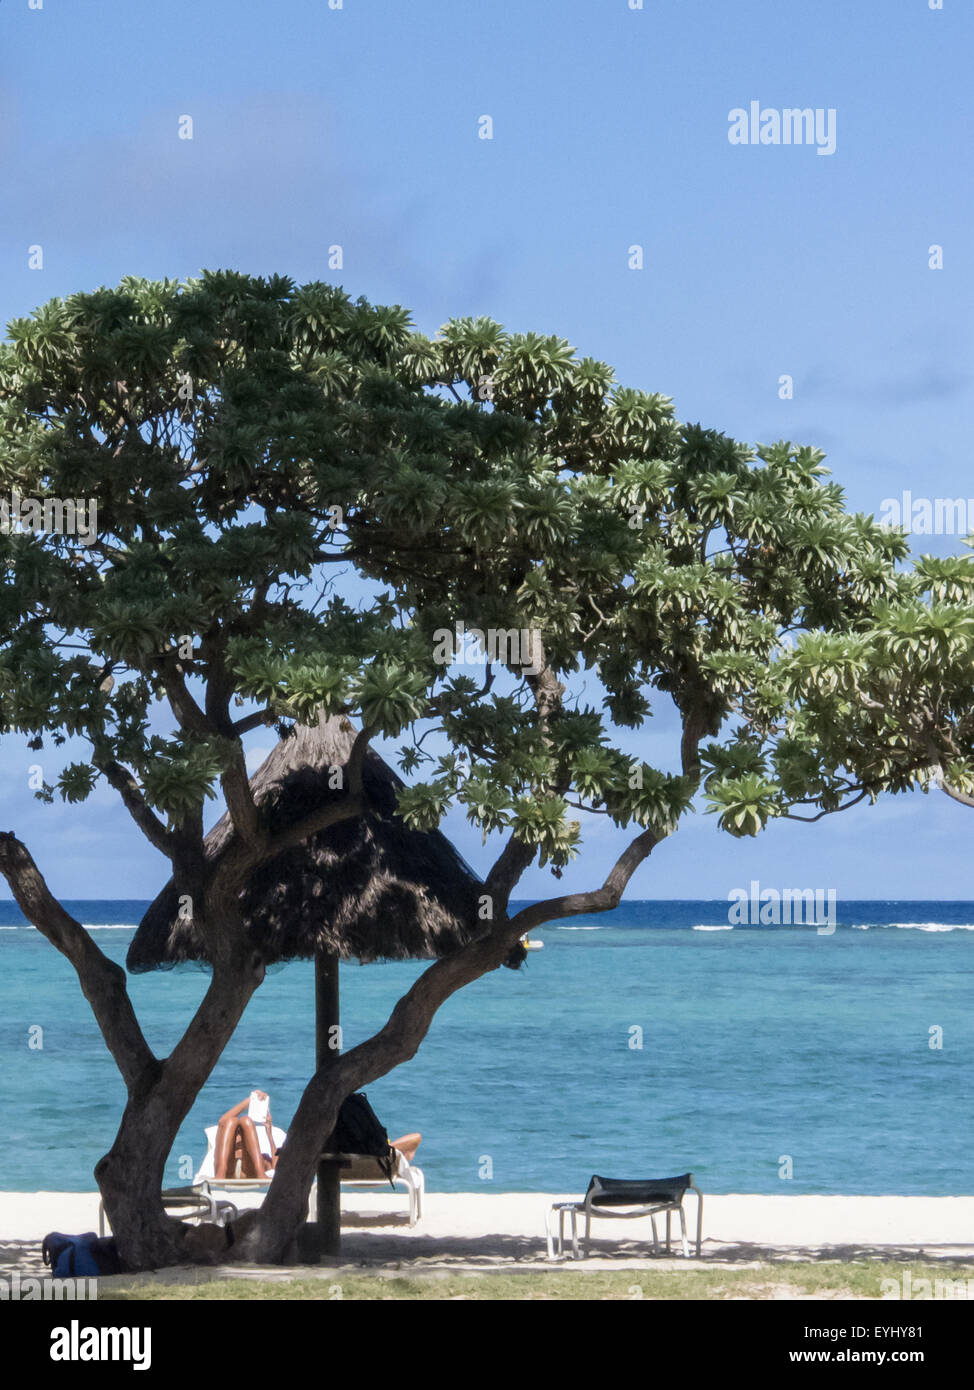 Flic En Flac, Mauritius. La Pirogue Touristenort. Sonnenliege, Baum und das Meer. Stockfoto